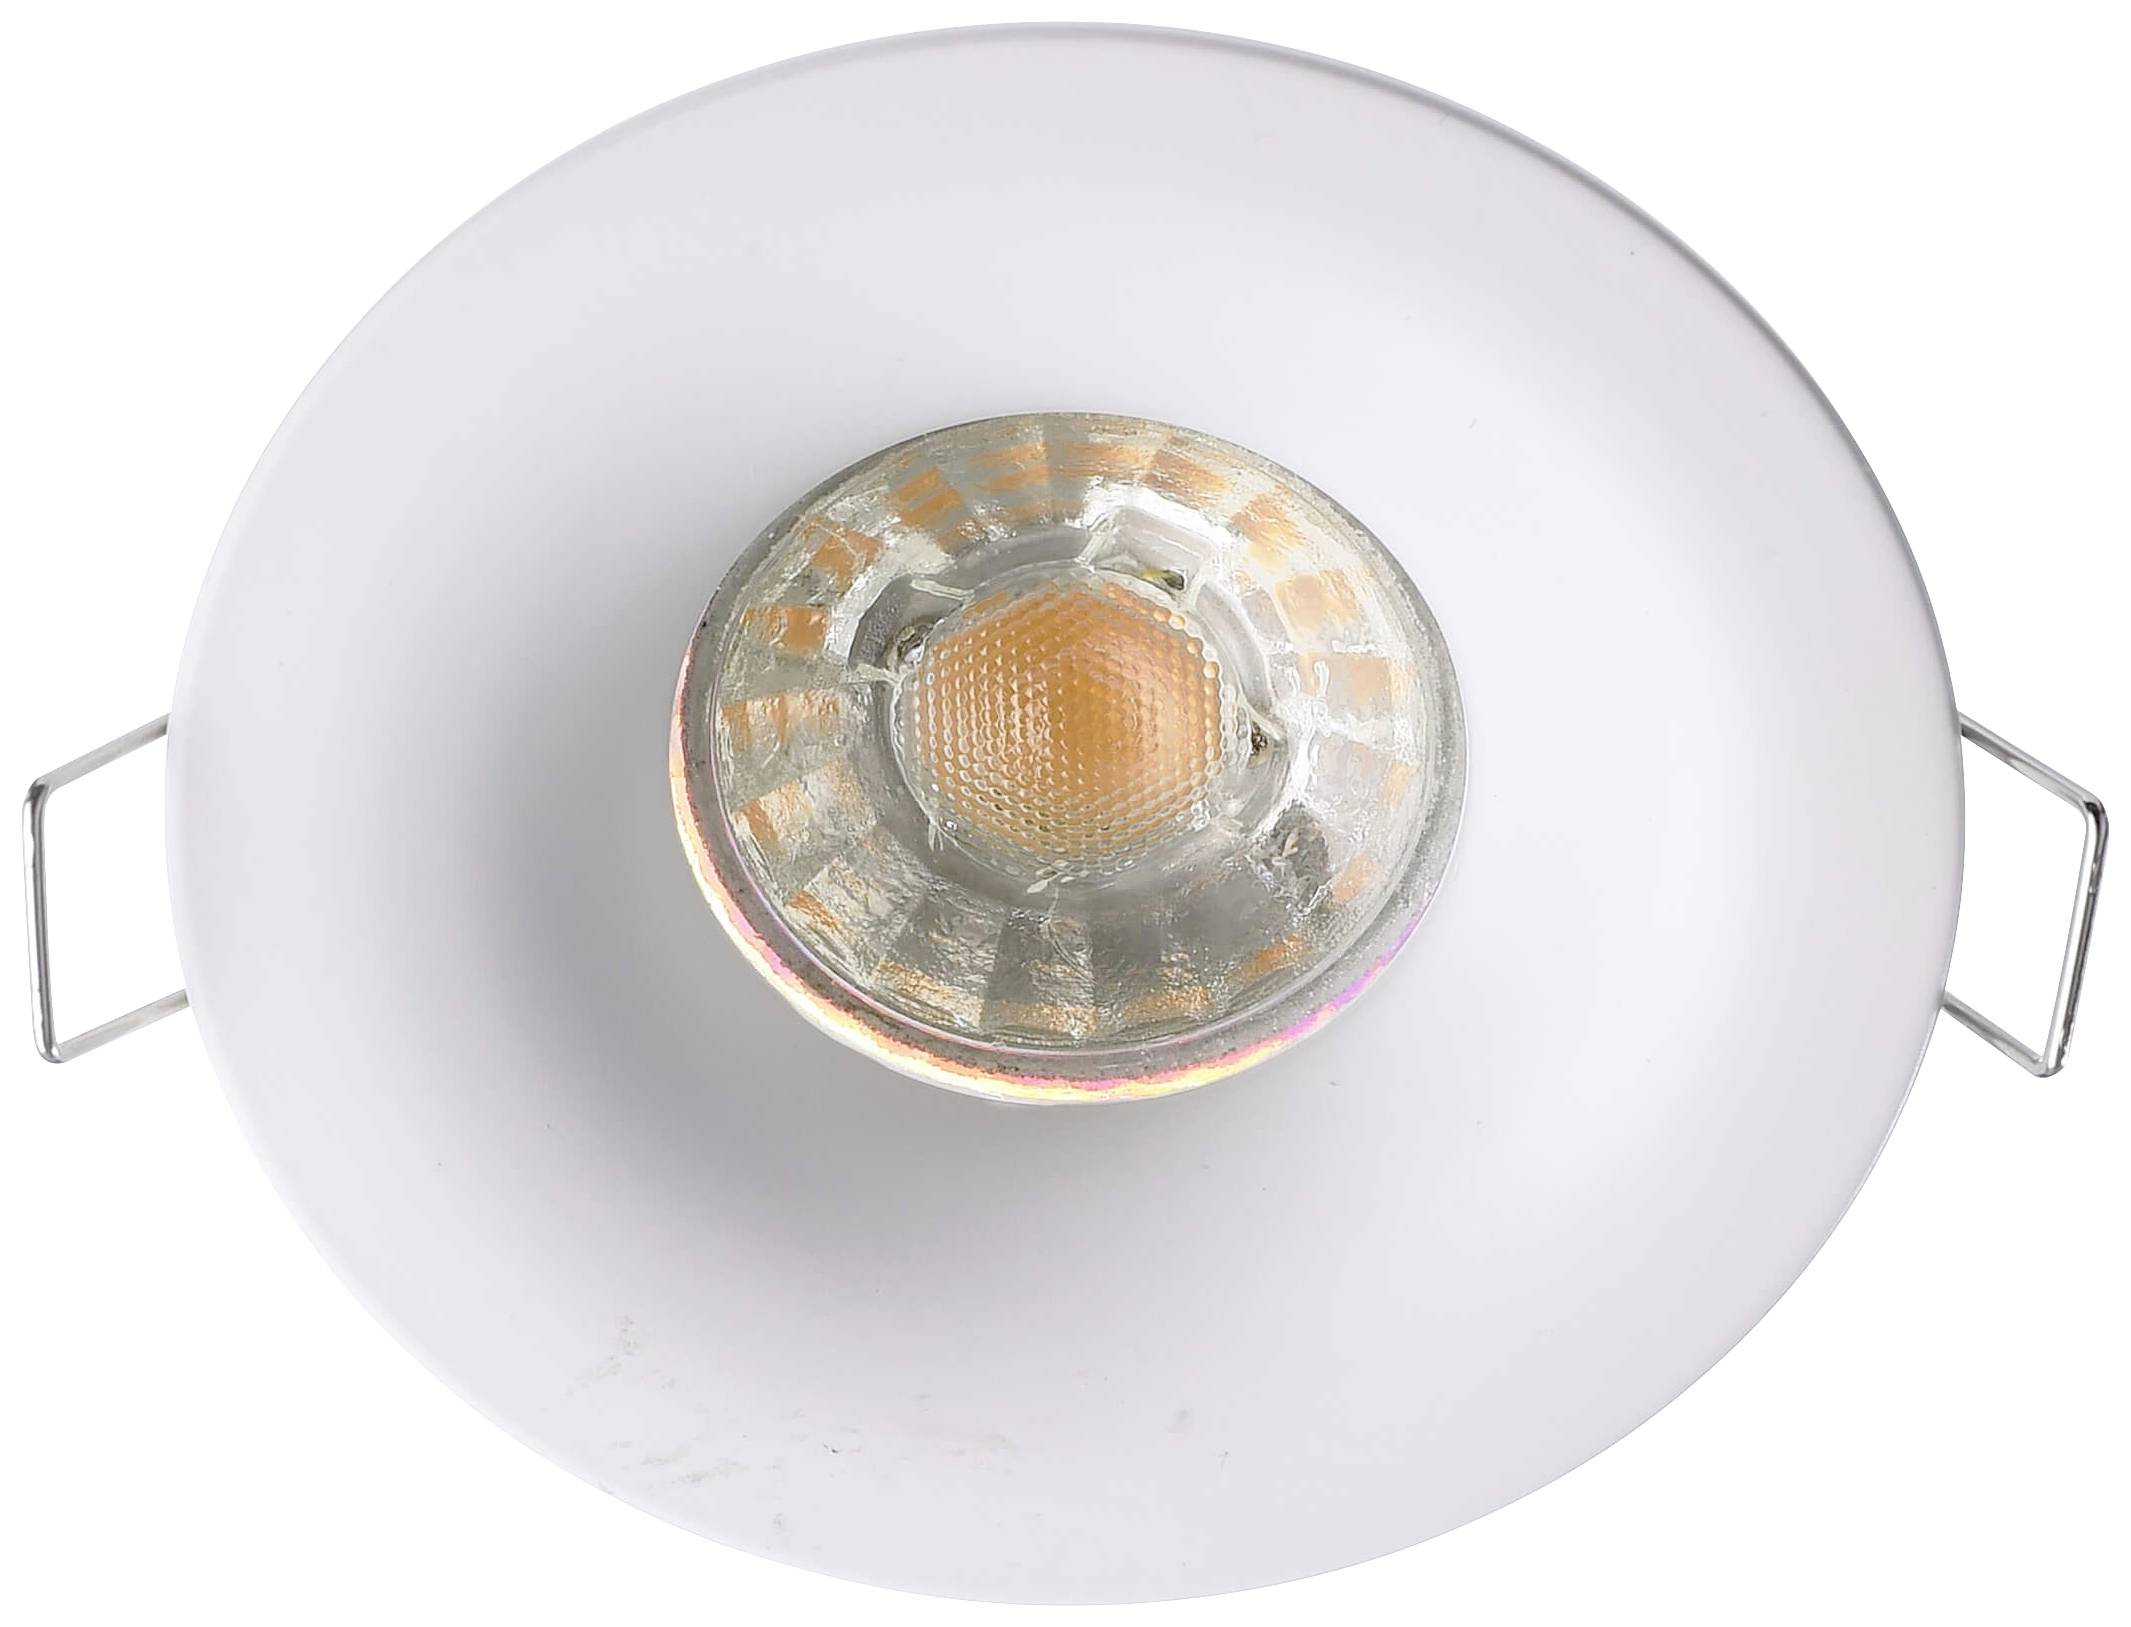 DEKO-LIGHT Deko Light Altair 110017 Deckeneinbauring LED, Halogen GU5.3, MR 16 35 W Signalweiß (RAL